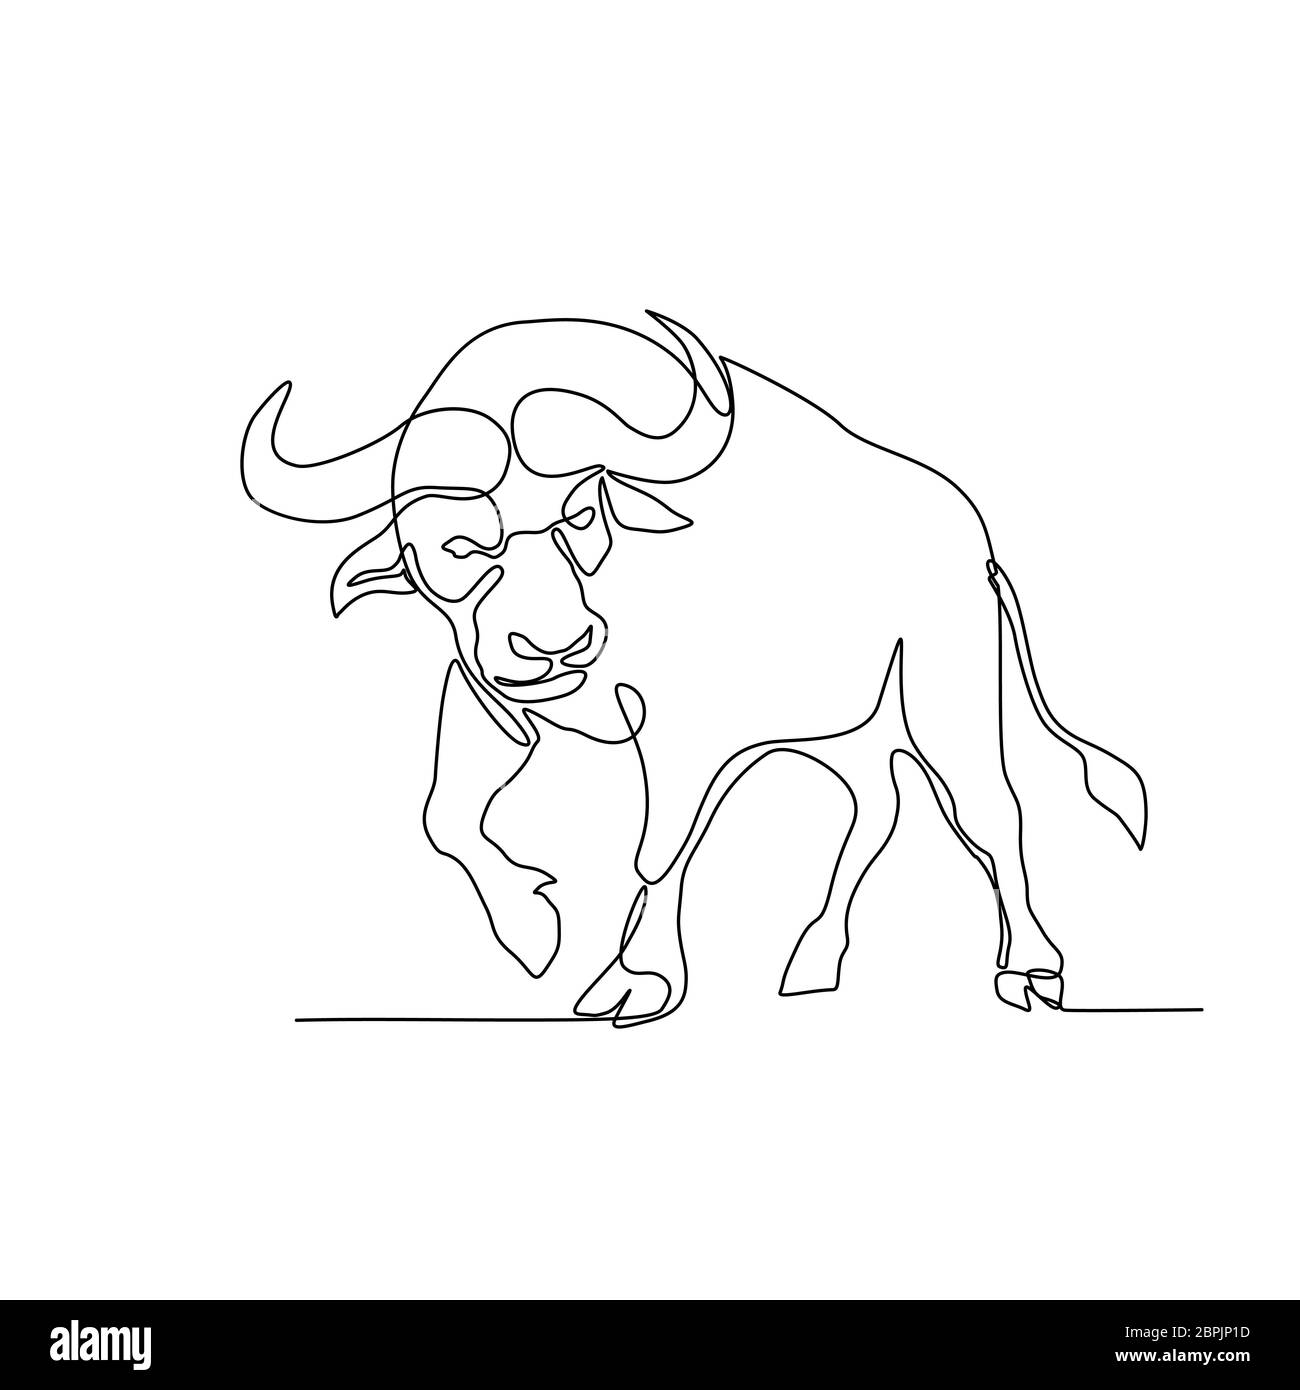 Linea continua illustrazione di un bufalo africano o bufalo del capo, una grande bovini africani, circa per caricare o attacco fatto in bianco e nero monolinea Foto Stock